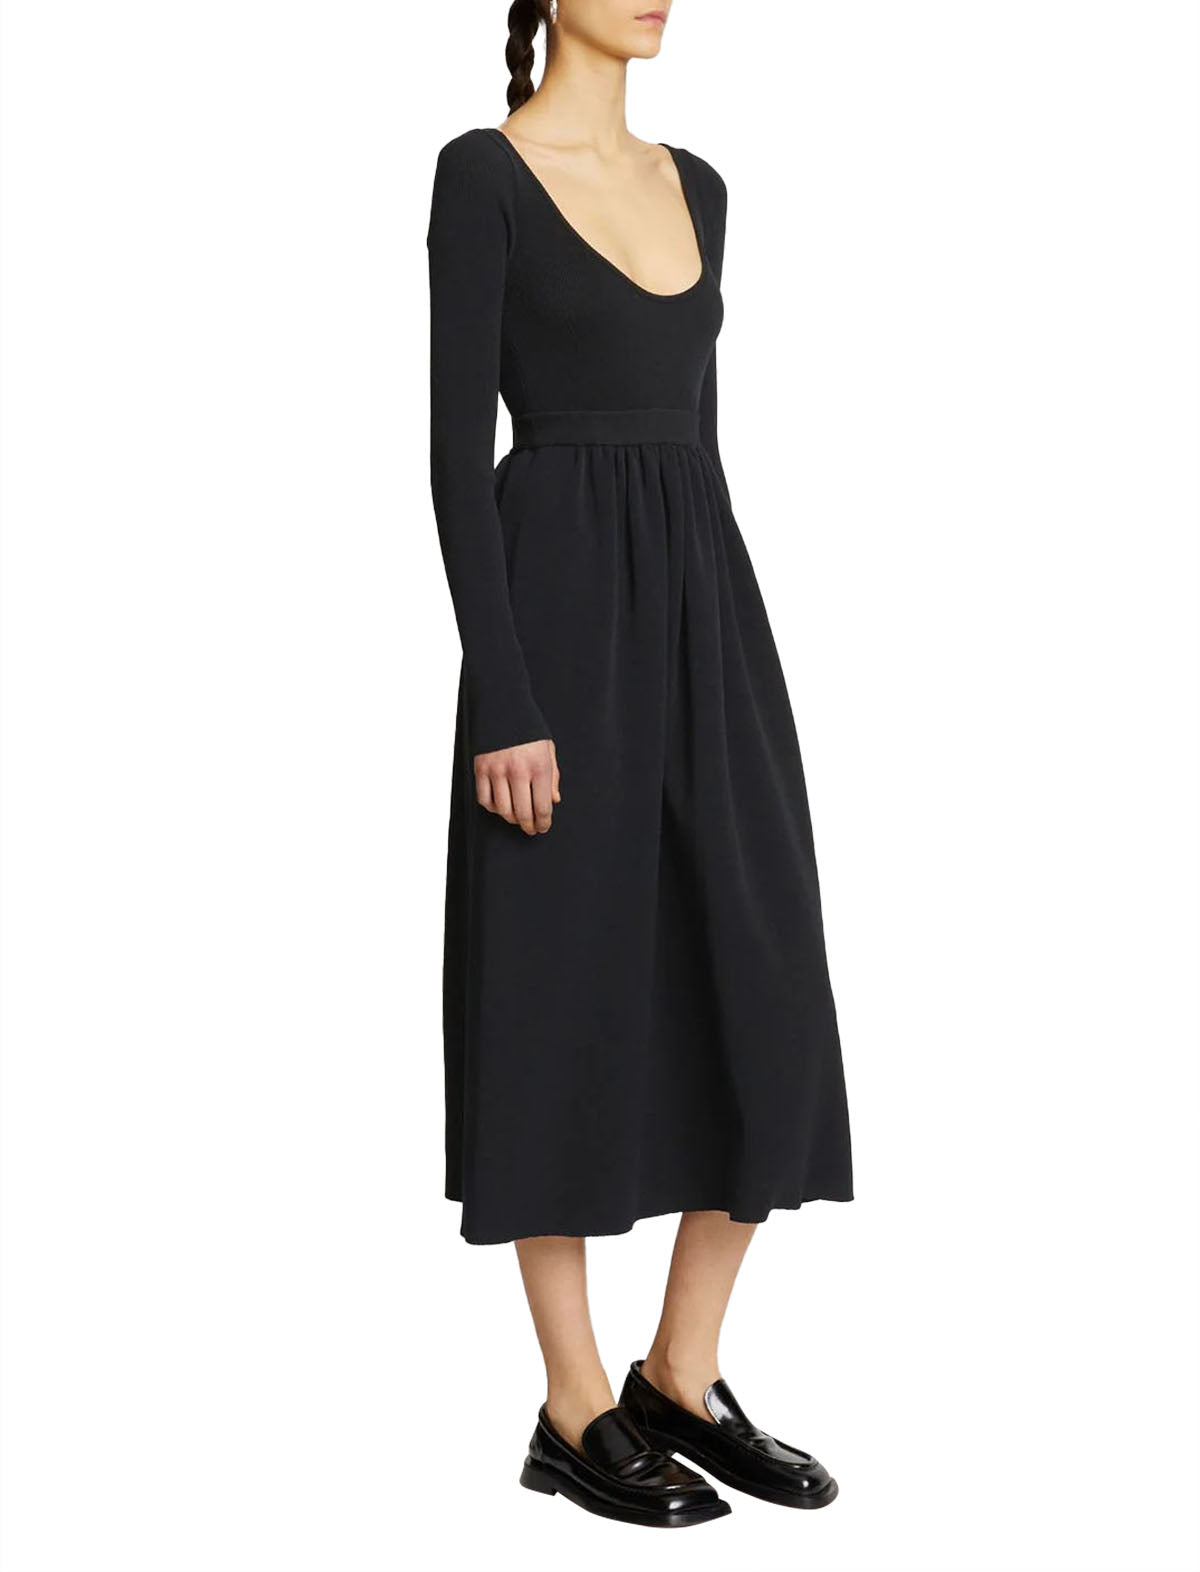 PROENZA SCHOULER WHITE LABEL Long Sleeve Knit Dress In Black